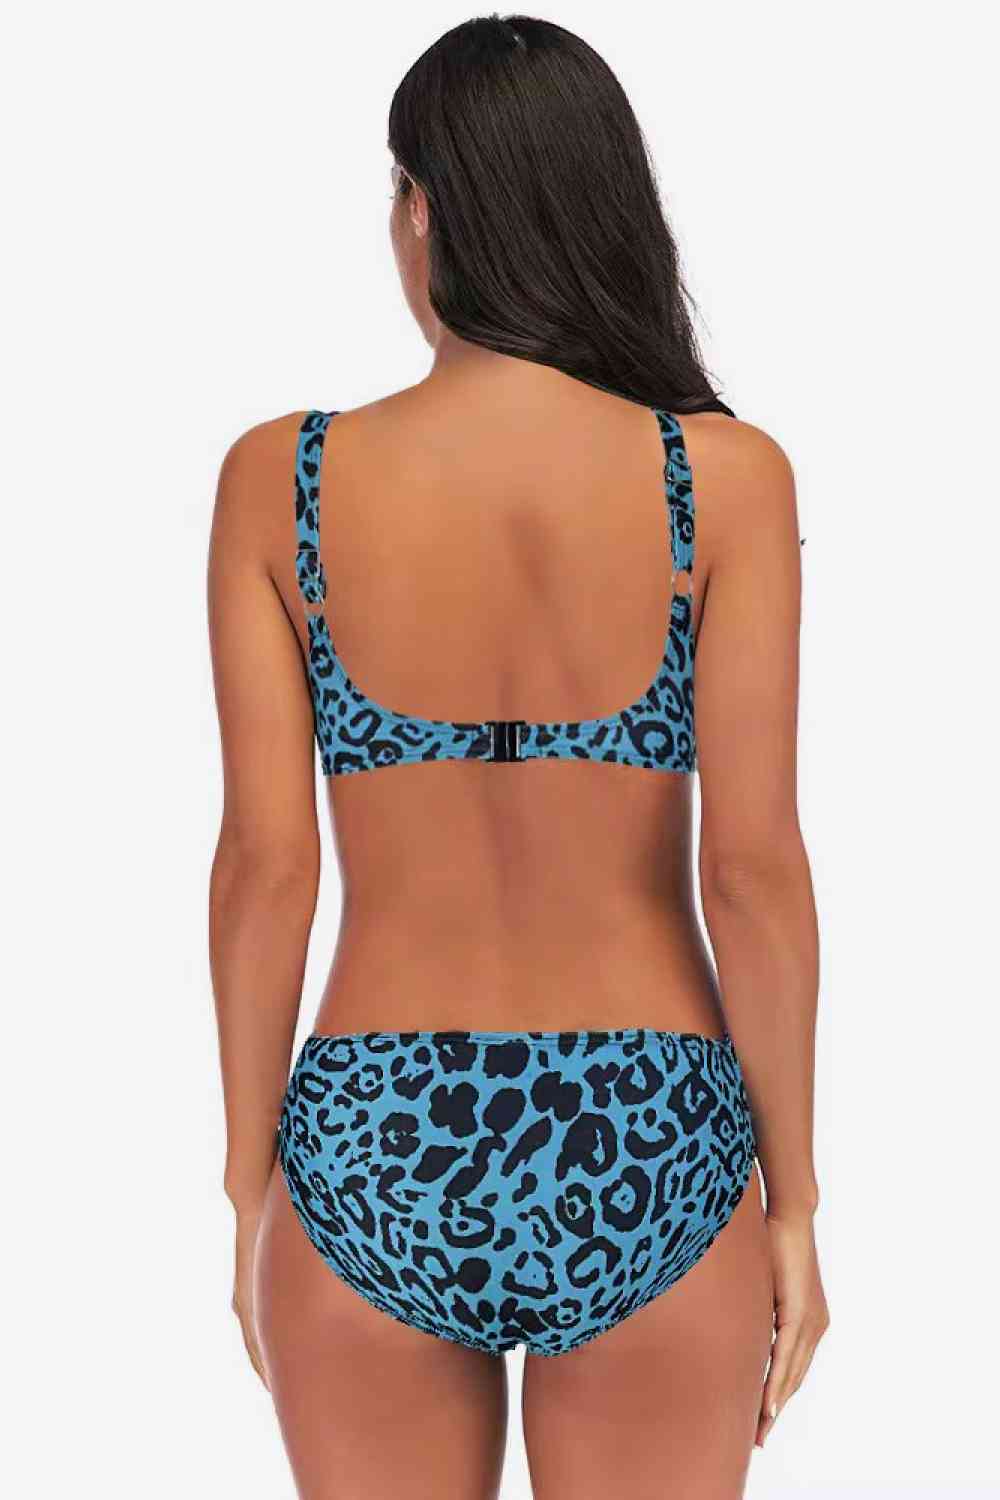 Leopard Bikini in Size M, L, XL, or 2XL